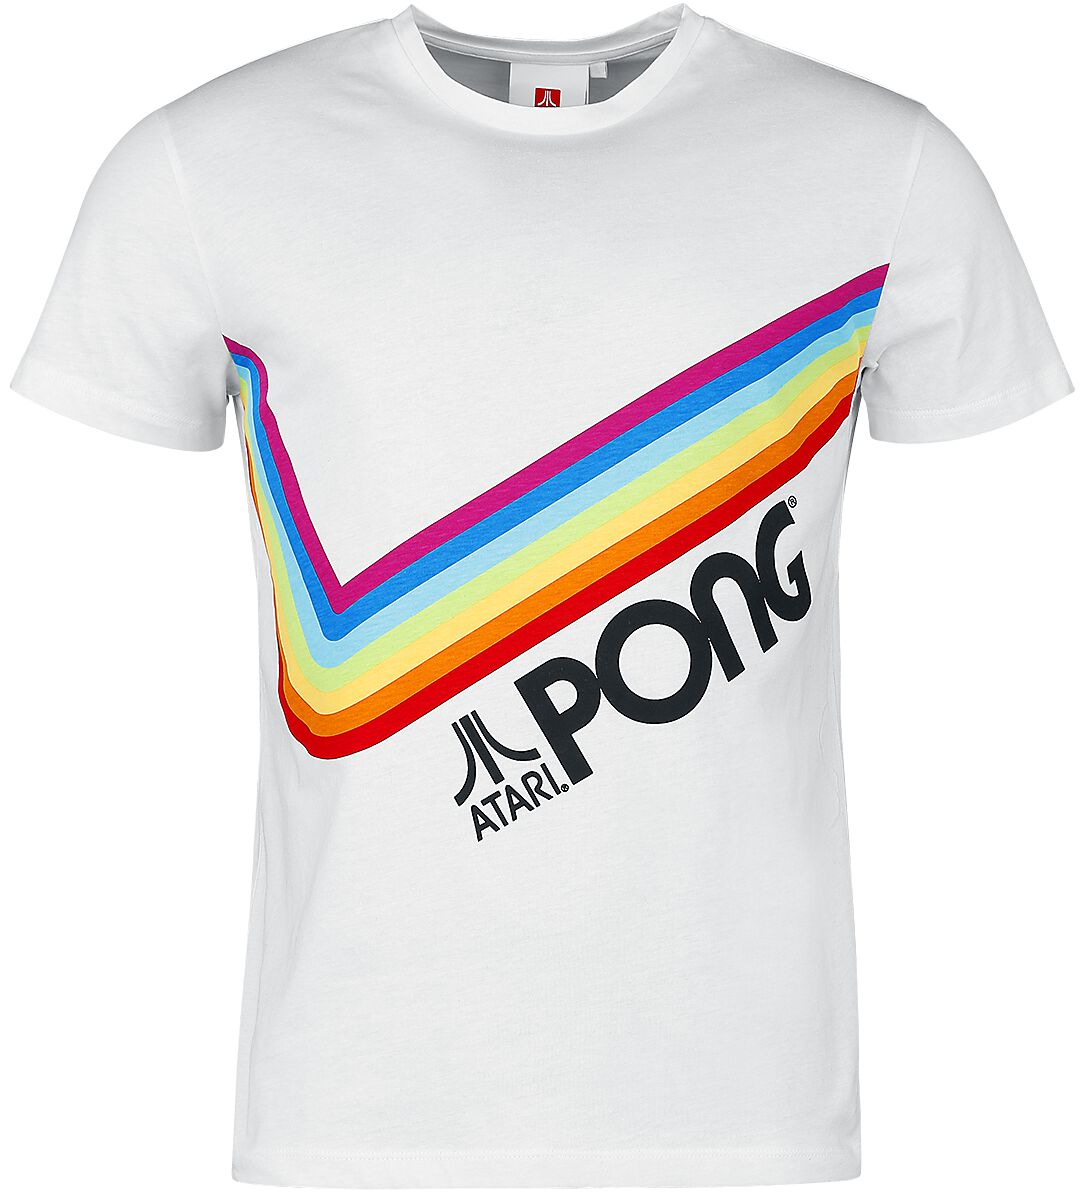 Atari - Gaming T-Shirt - Pong - Pride Rainbow - S bis 3XL - für Männer - Größe S - weiß  - EMP exklusives Merchandise!